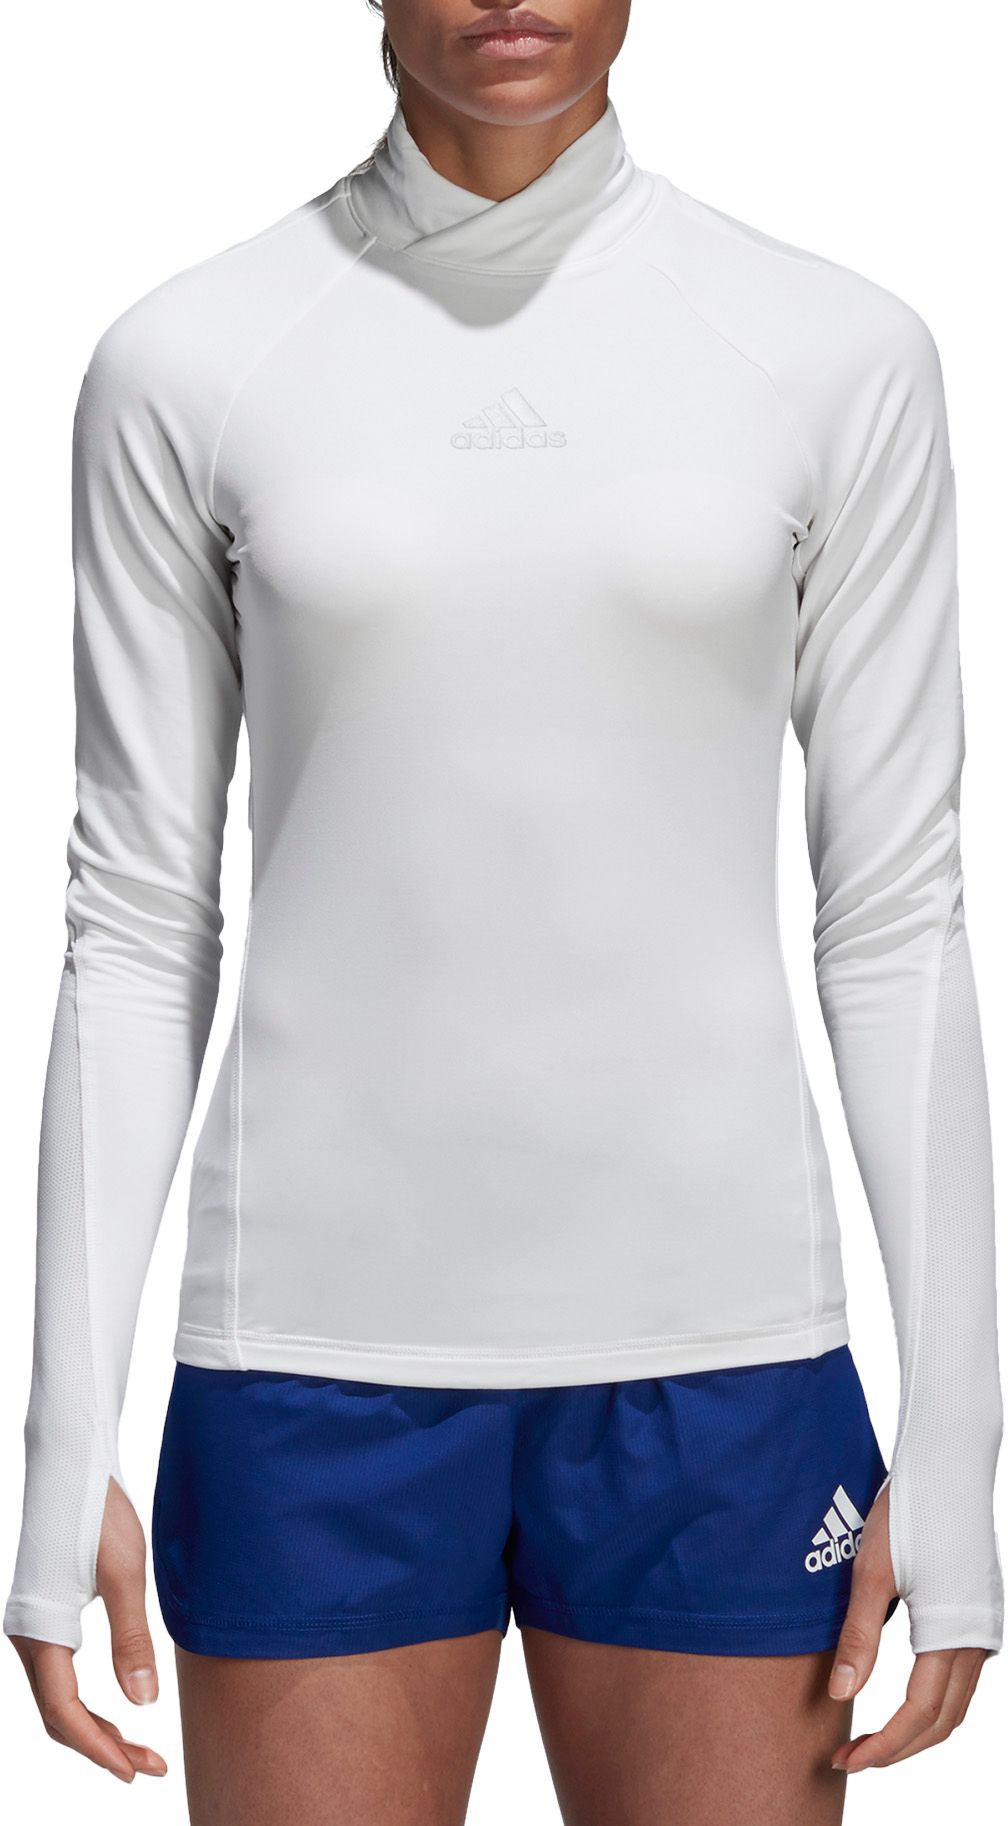 adidas women's alphaskin long sleeve soccer shirt